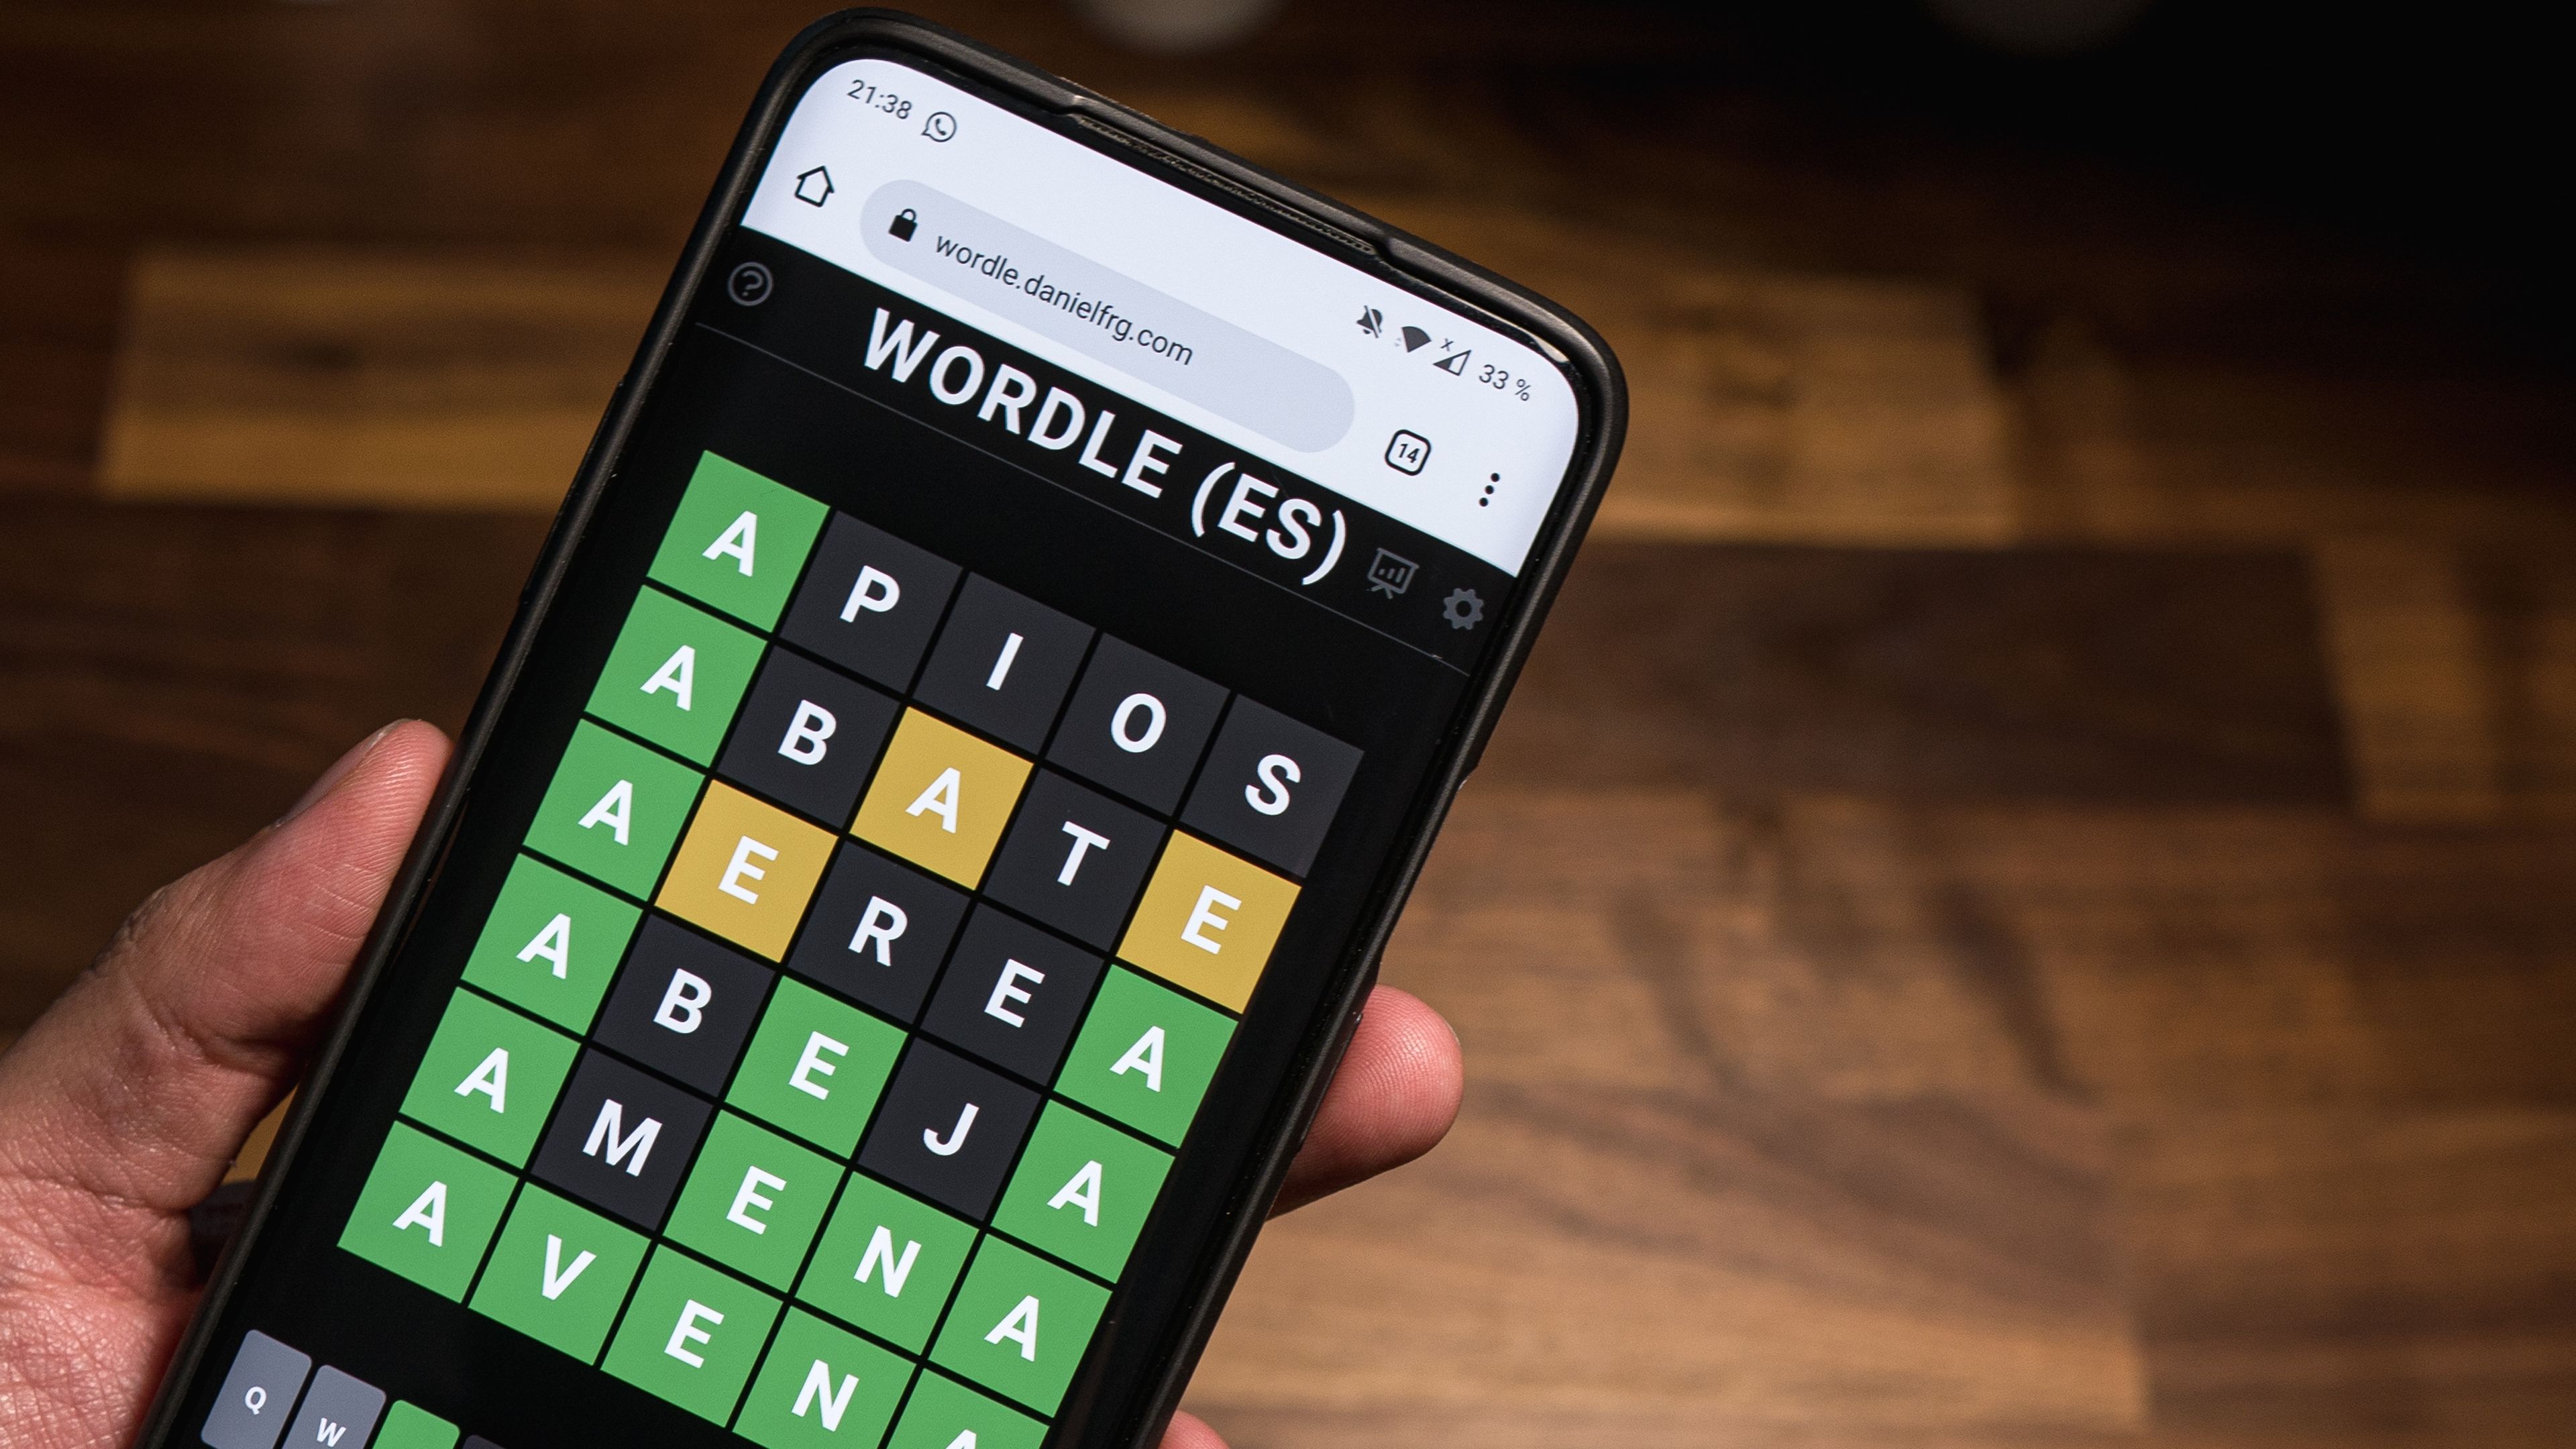 Las mejores palabras y trucos para ganar en Wordle sin hacer trampas